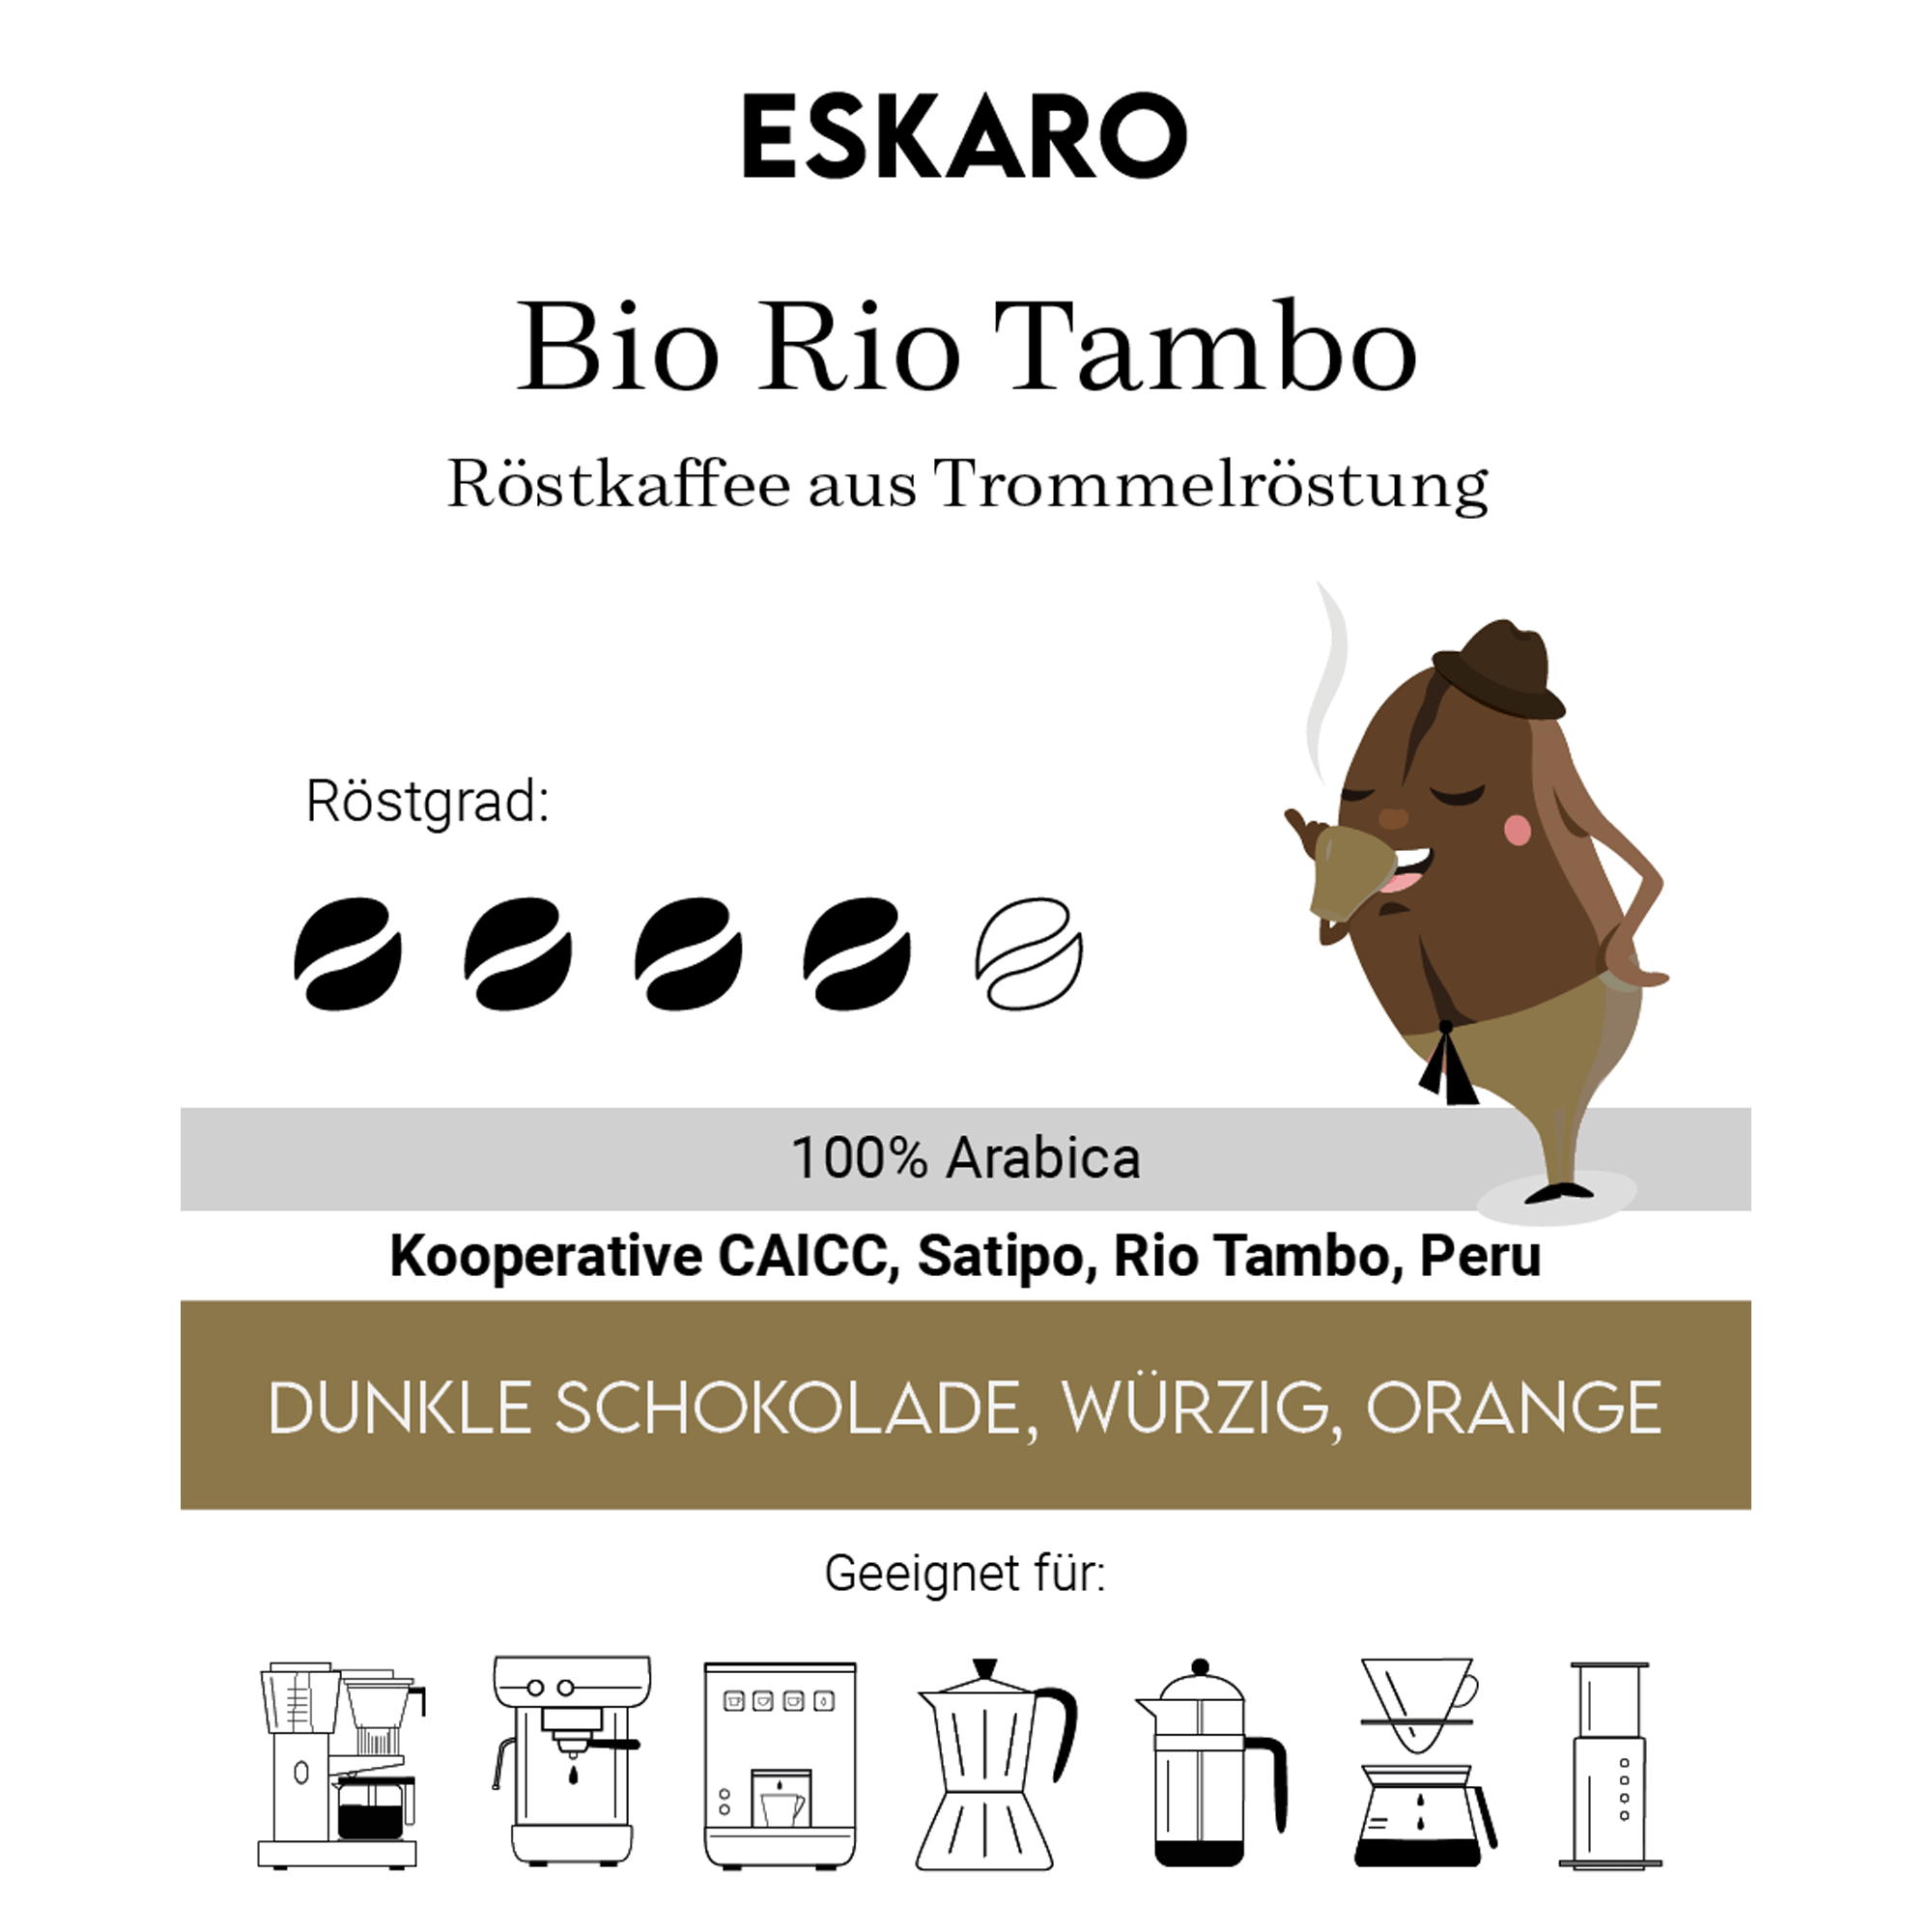 Bio Rio Tambo - Eskaro - Esser Kaffeerösterei und Handelsgesellschaft mbH